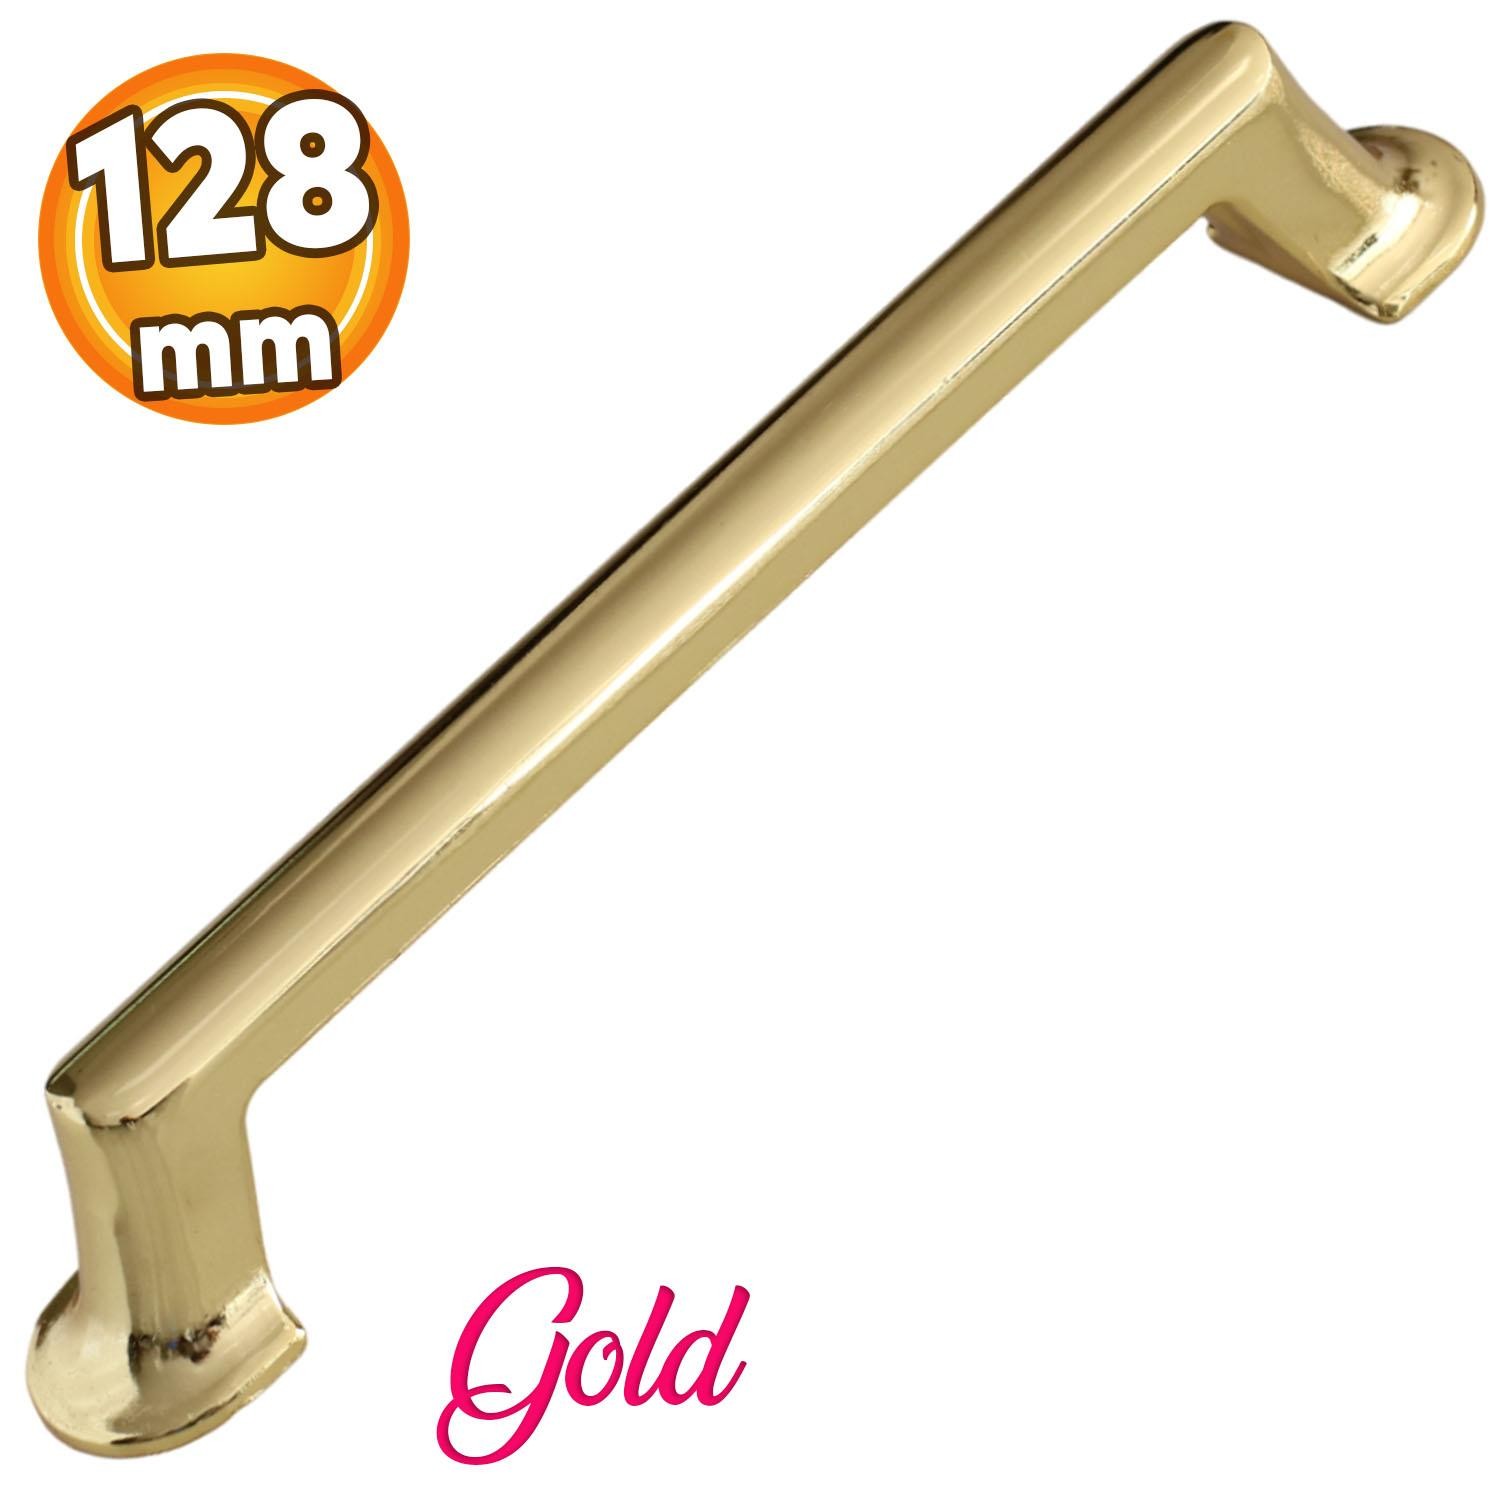 Nal Gold Altın Metal Kulp 128 mm-12.8 cm Mobilya Çekmece Mutfak Dolabı Dolap Kapak Kulpları Kulbu